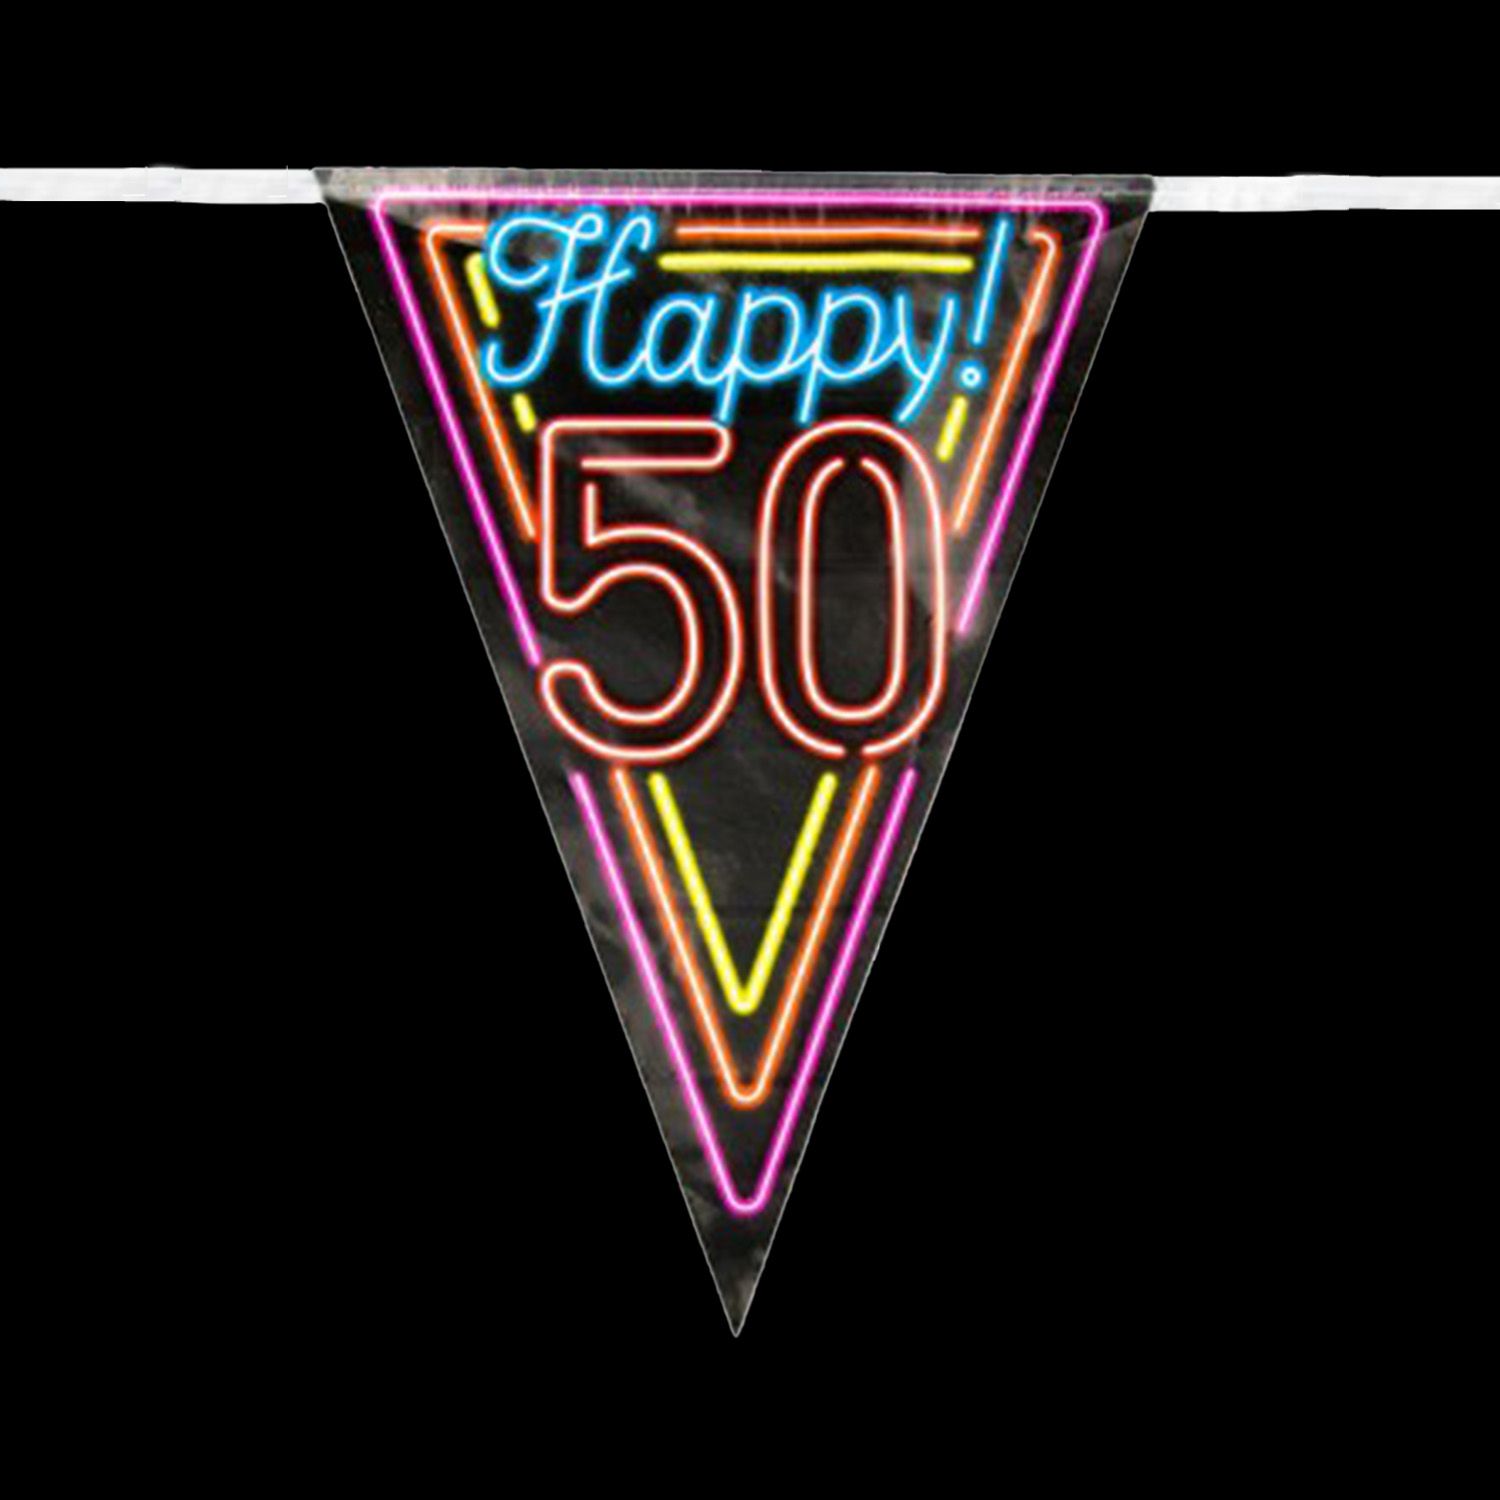 vlaggenlijn neon 50 jaar